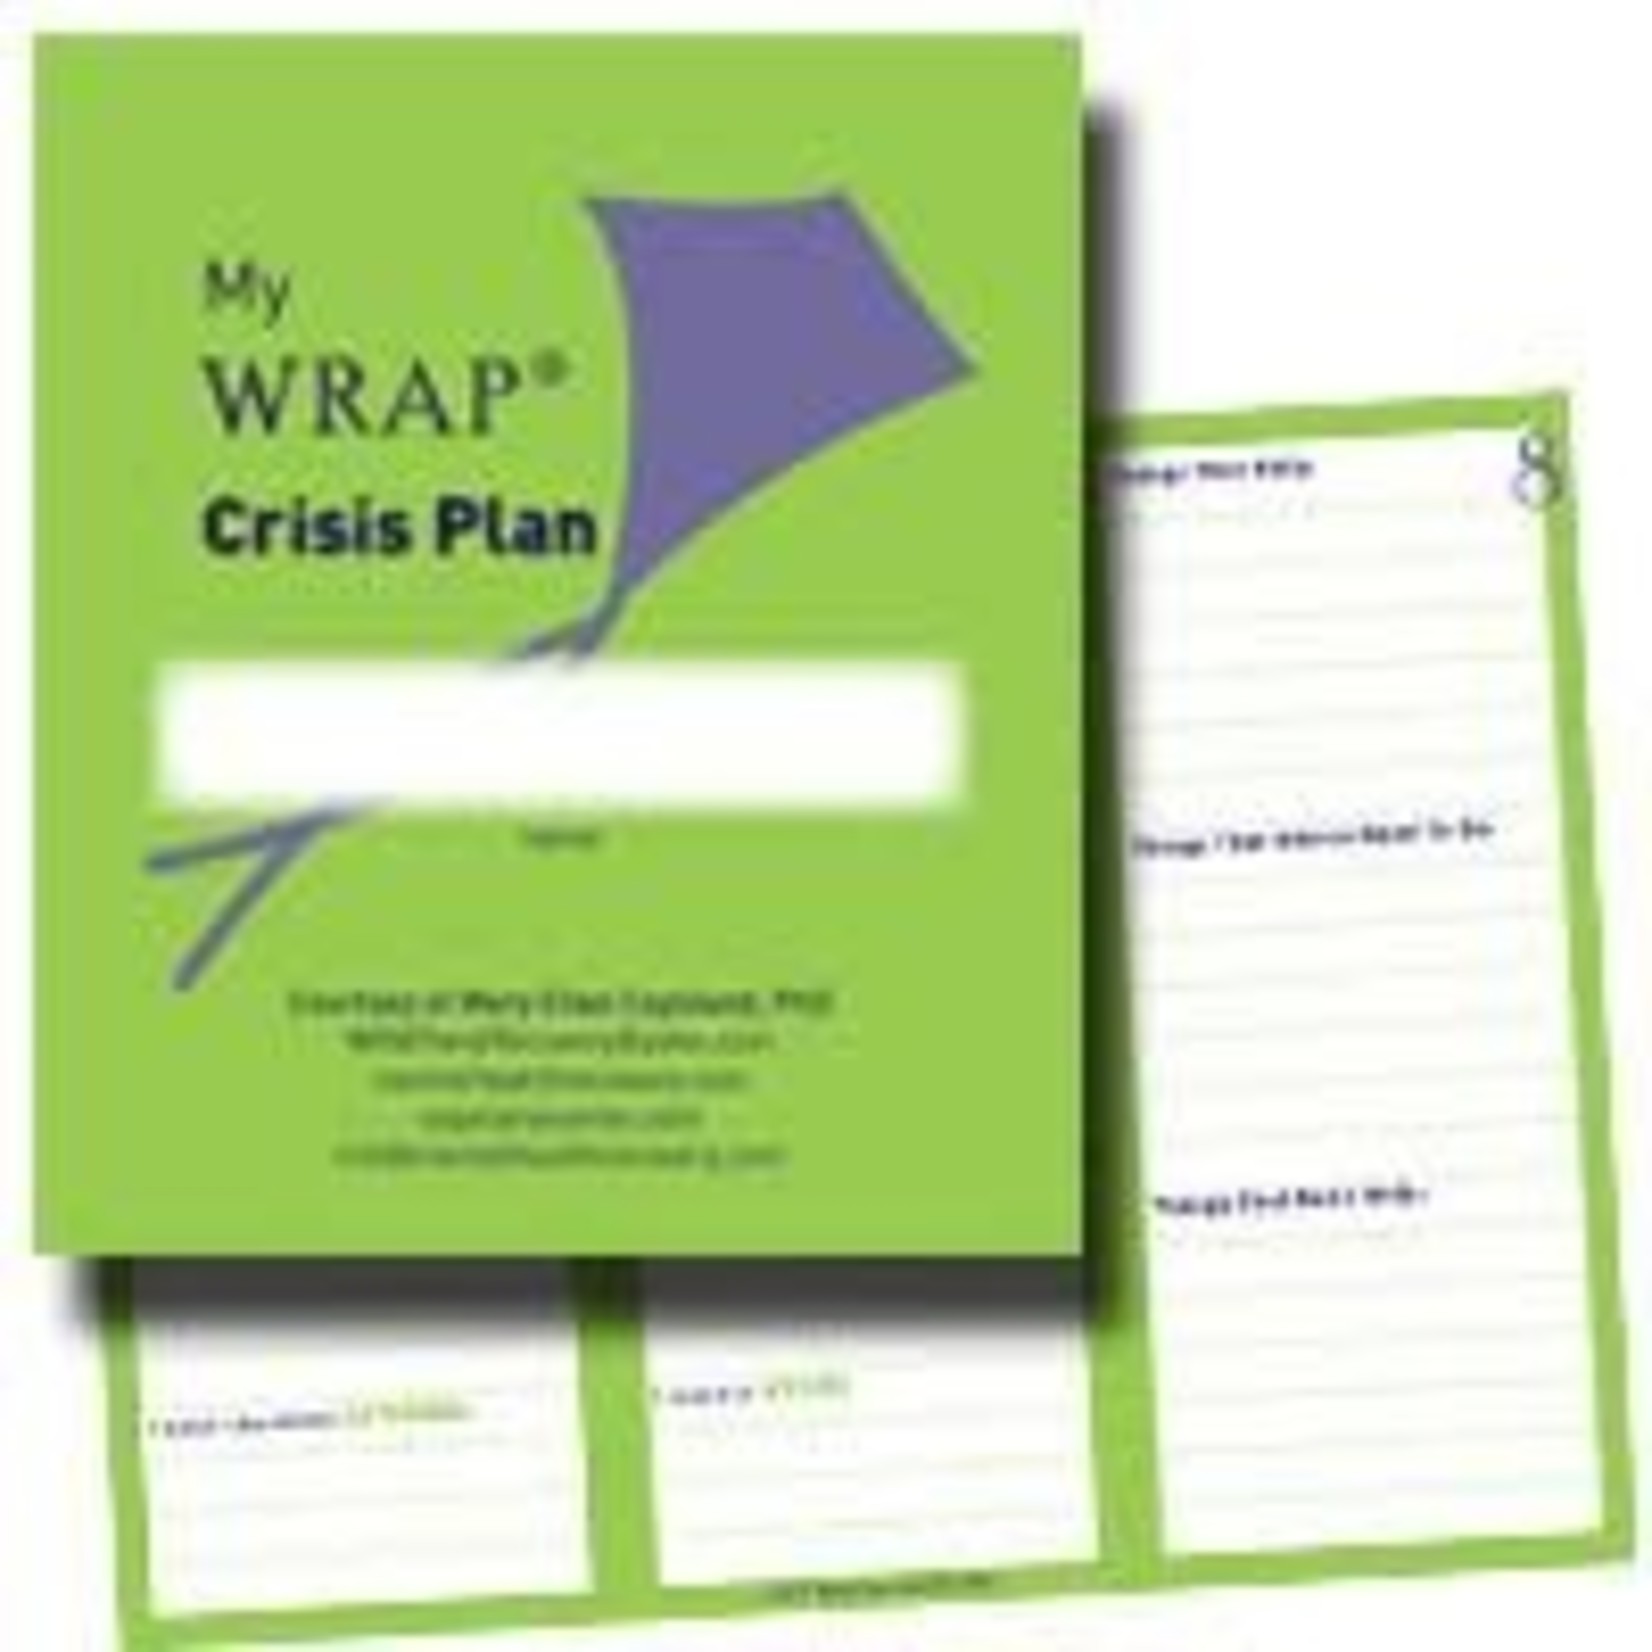 WRAP Crisis Plan